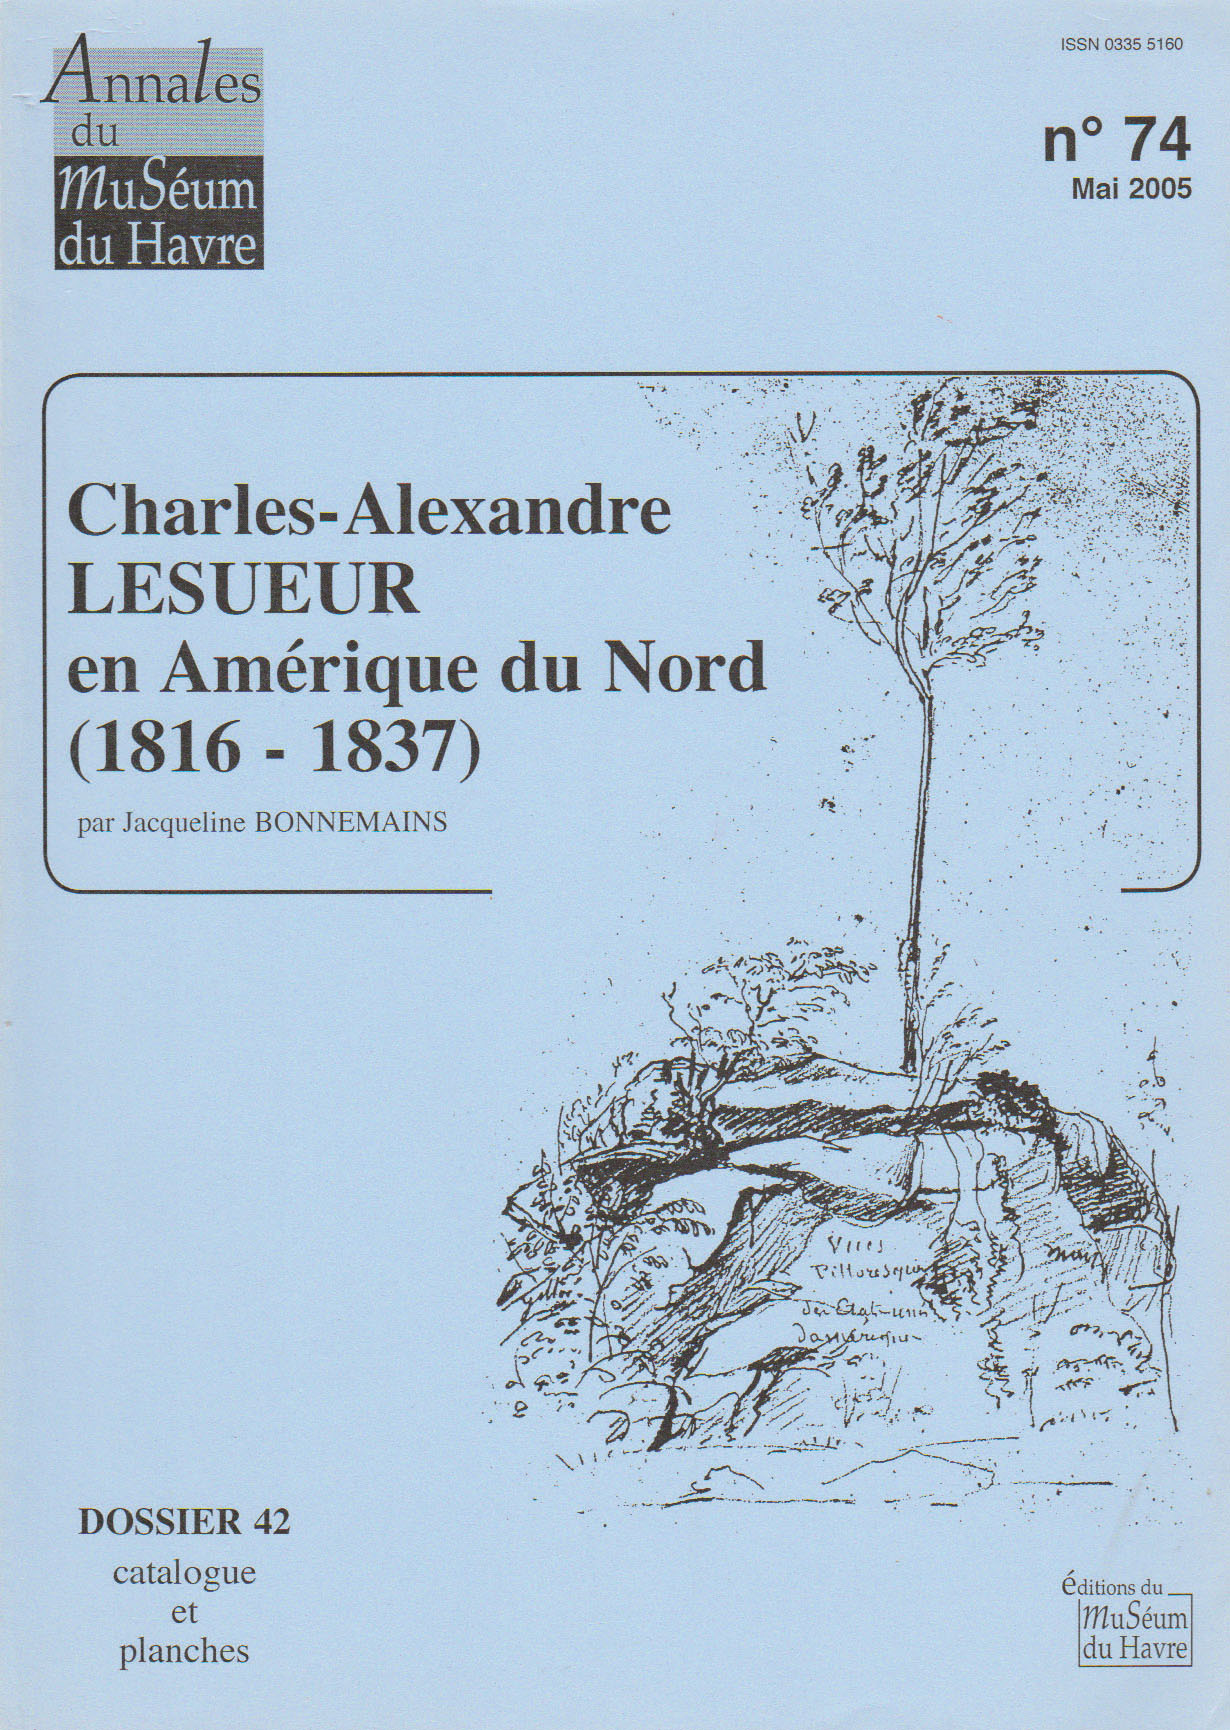 Couverture du catalogue 42, Lesueur en Amrique du Nord, par Jacqueline Bonnemains